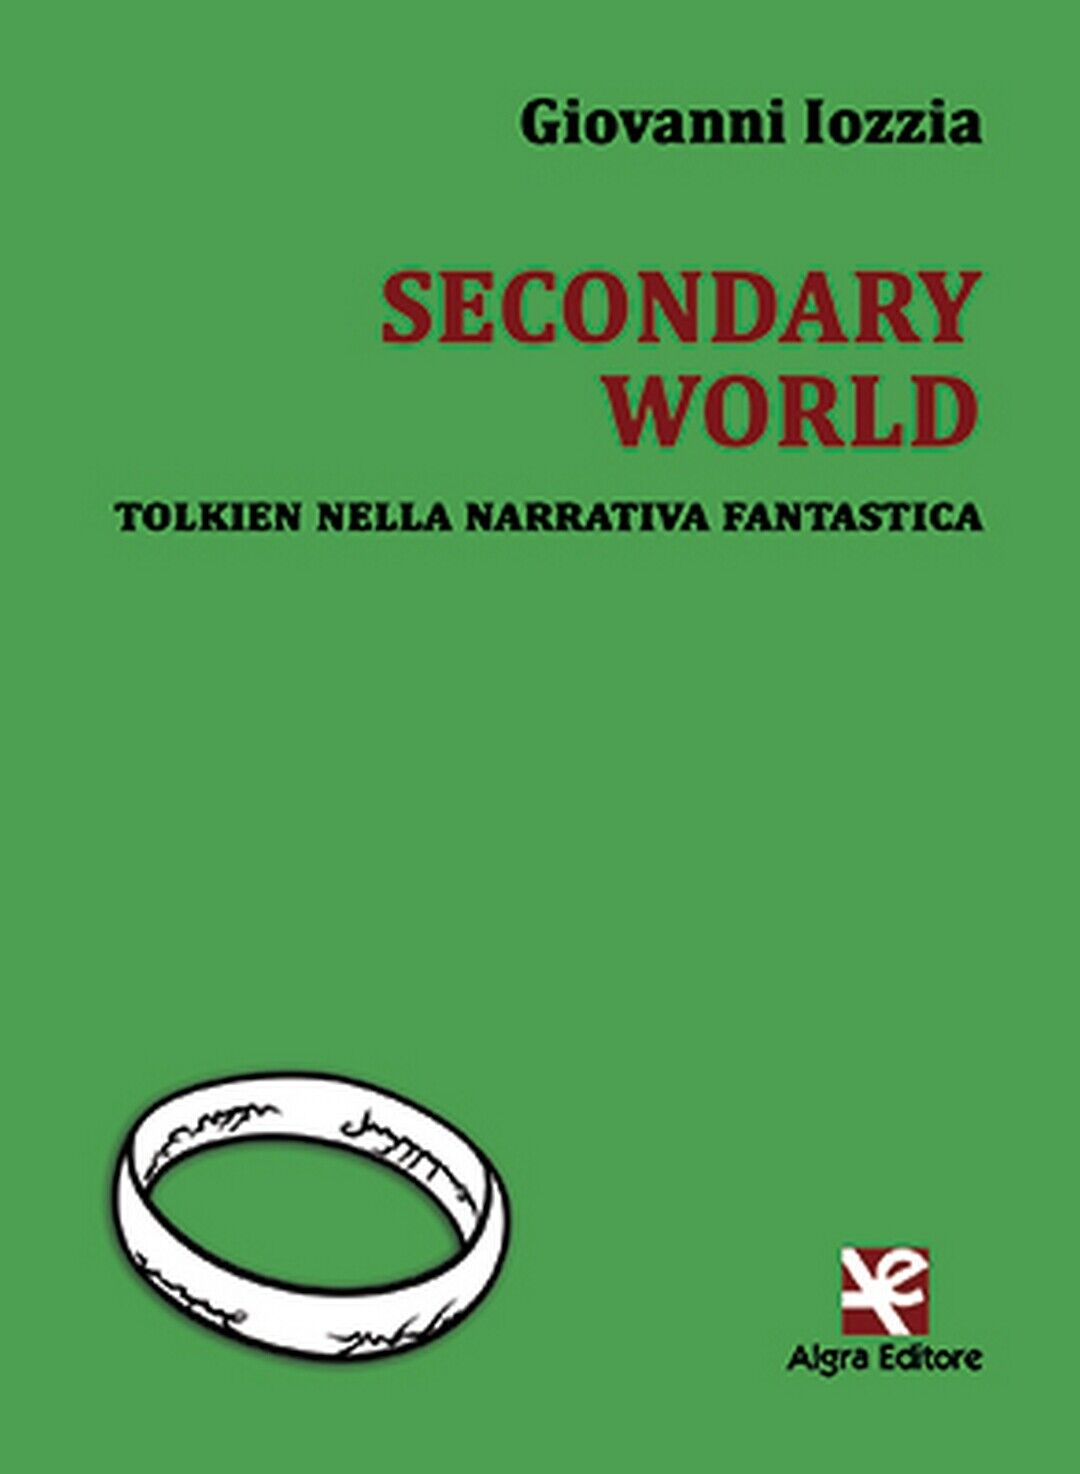 Secondary World. Tolkien nella narrativa fantastica  di Giovanni Iozzia,  Algra 